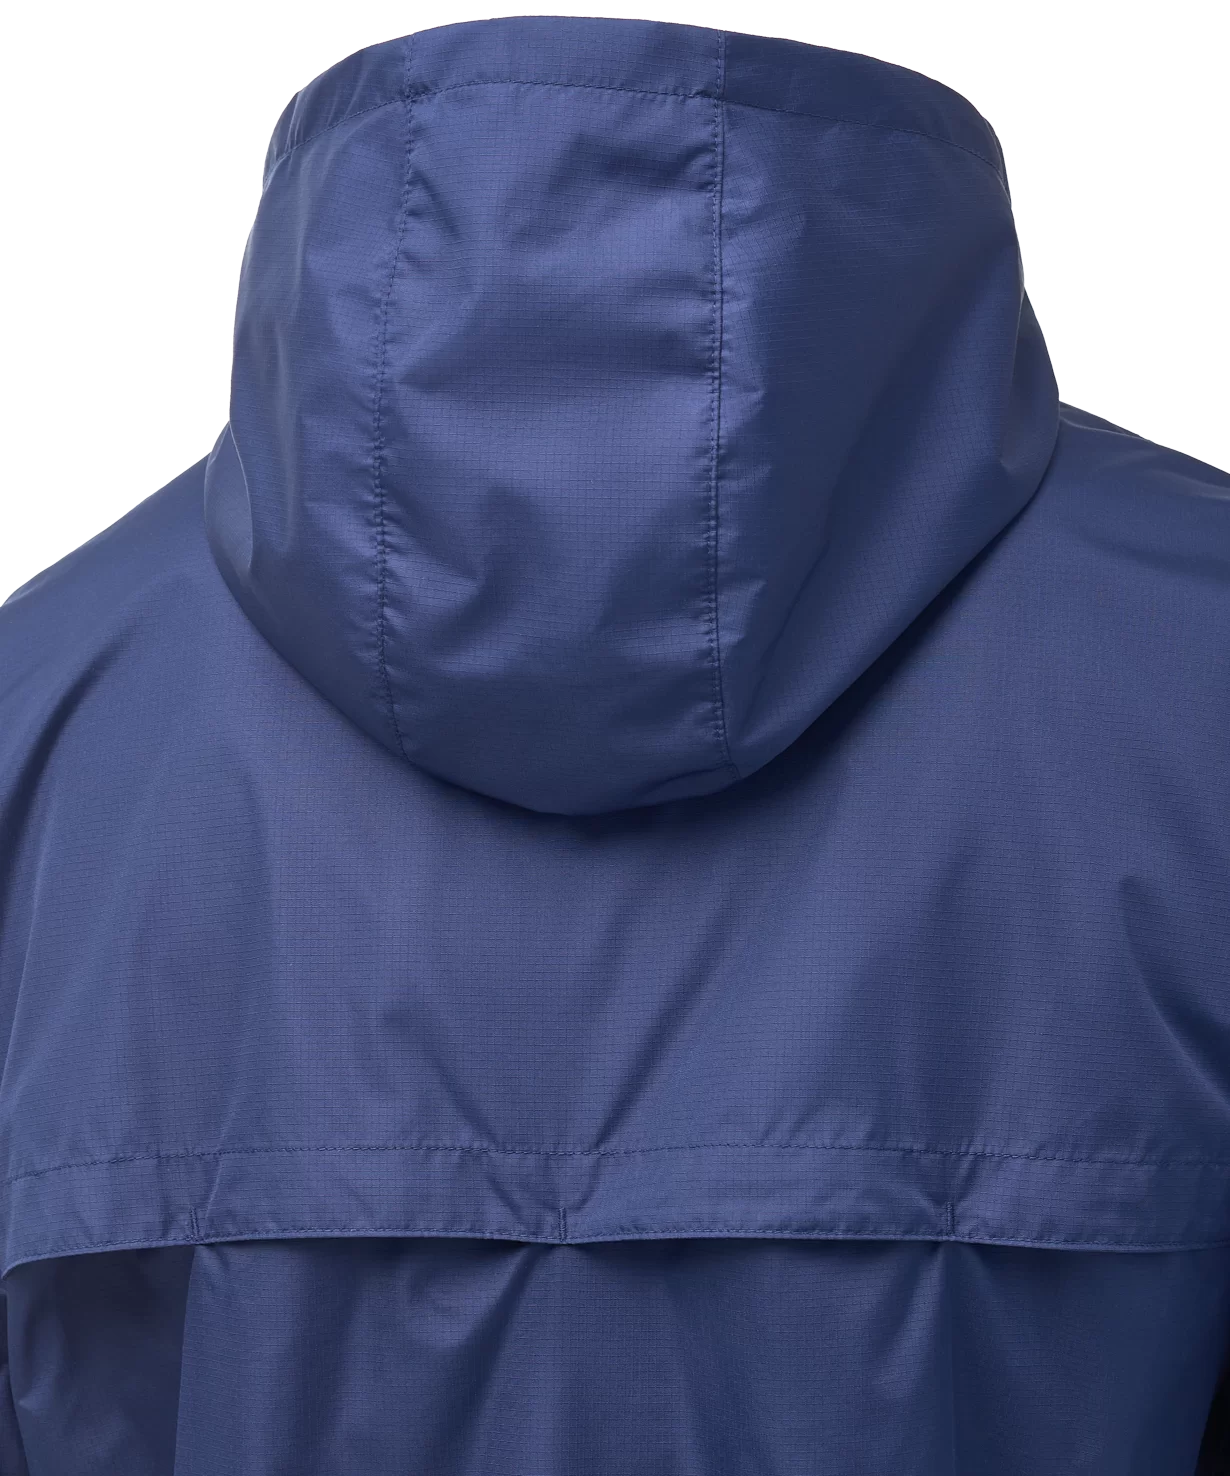 Реальное фото Куртка ветрозащитная DIVISION PerFormPROOF Shower Jacket, темно-синий, детский Jögel от магазина СпортЕВ